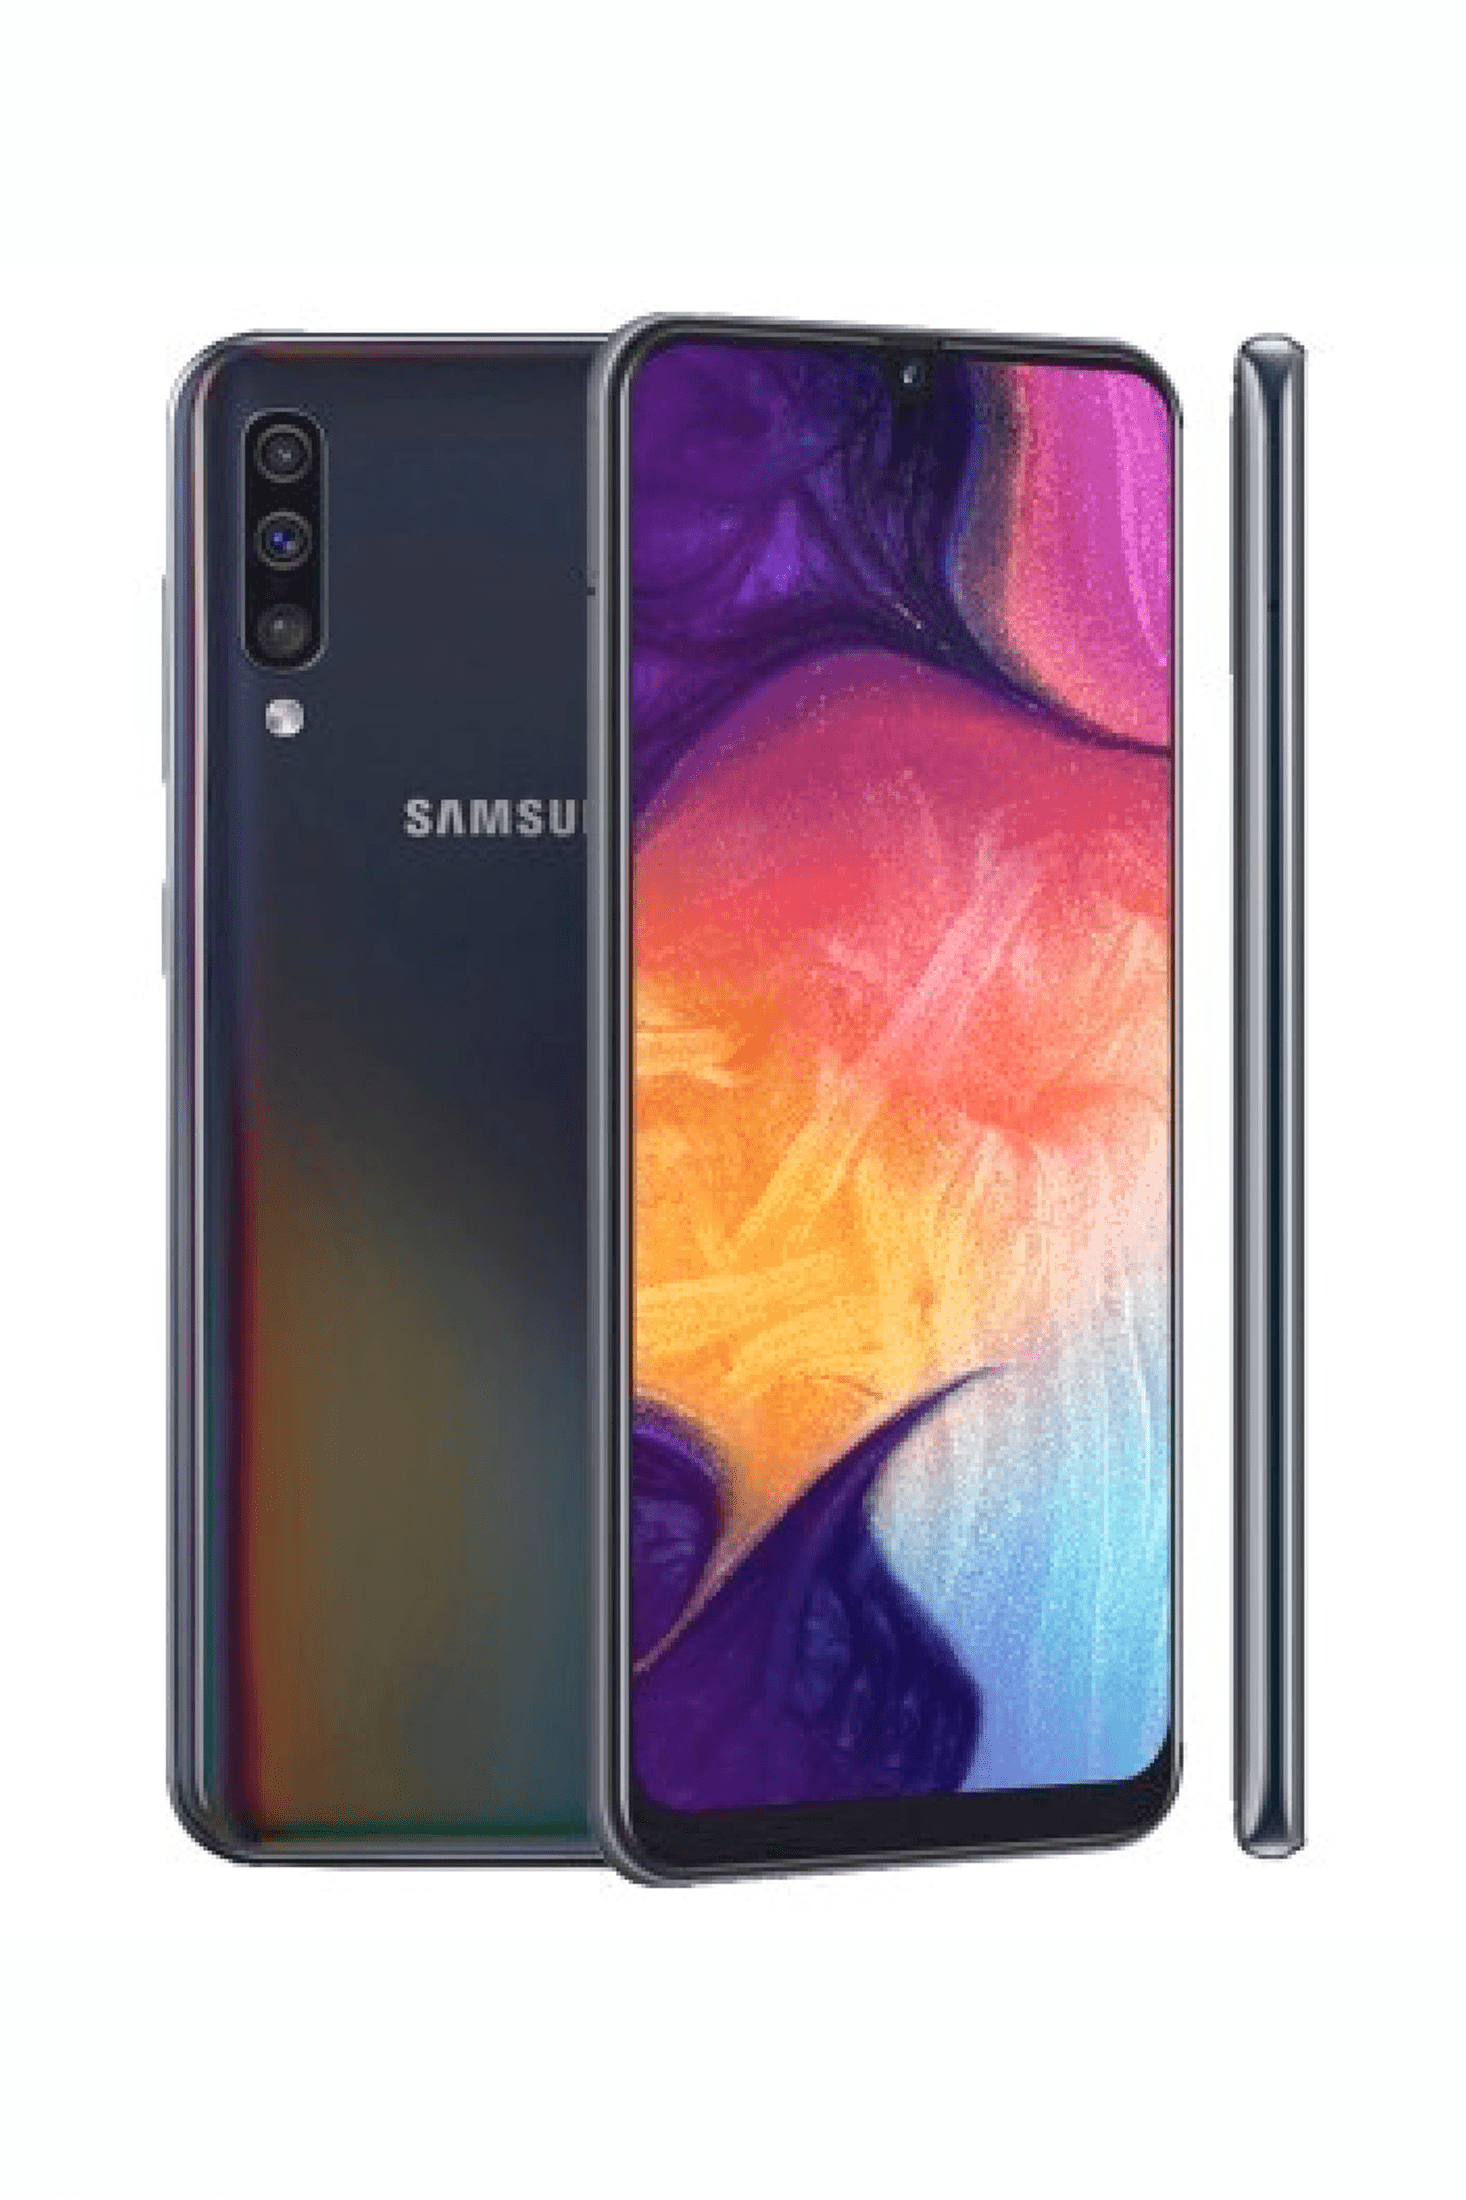 Galaxy A50 SM-A505F 128GB